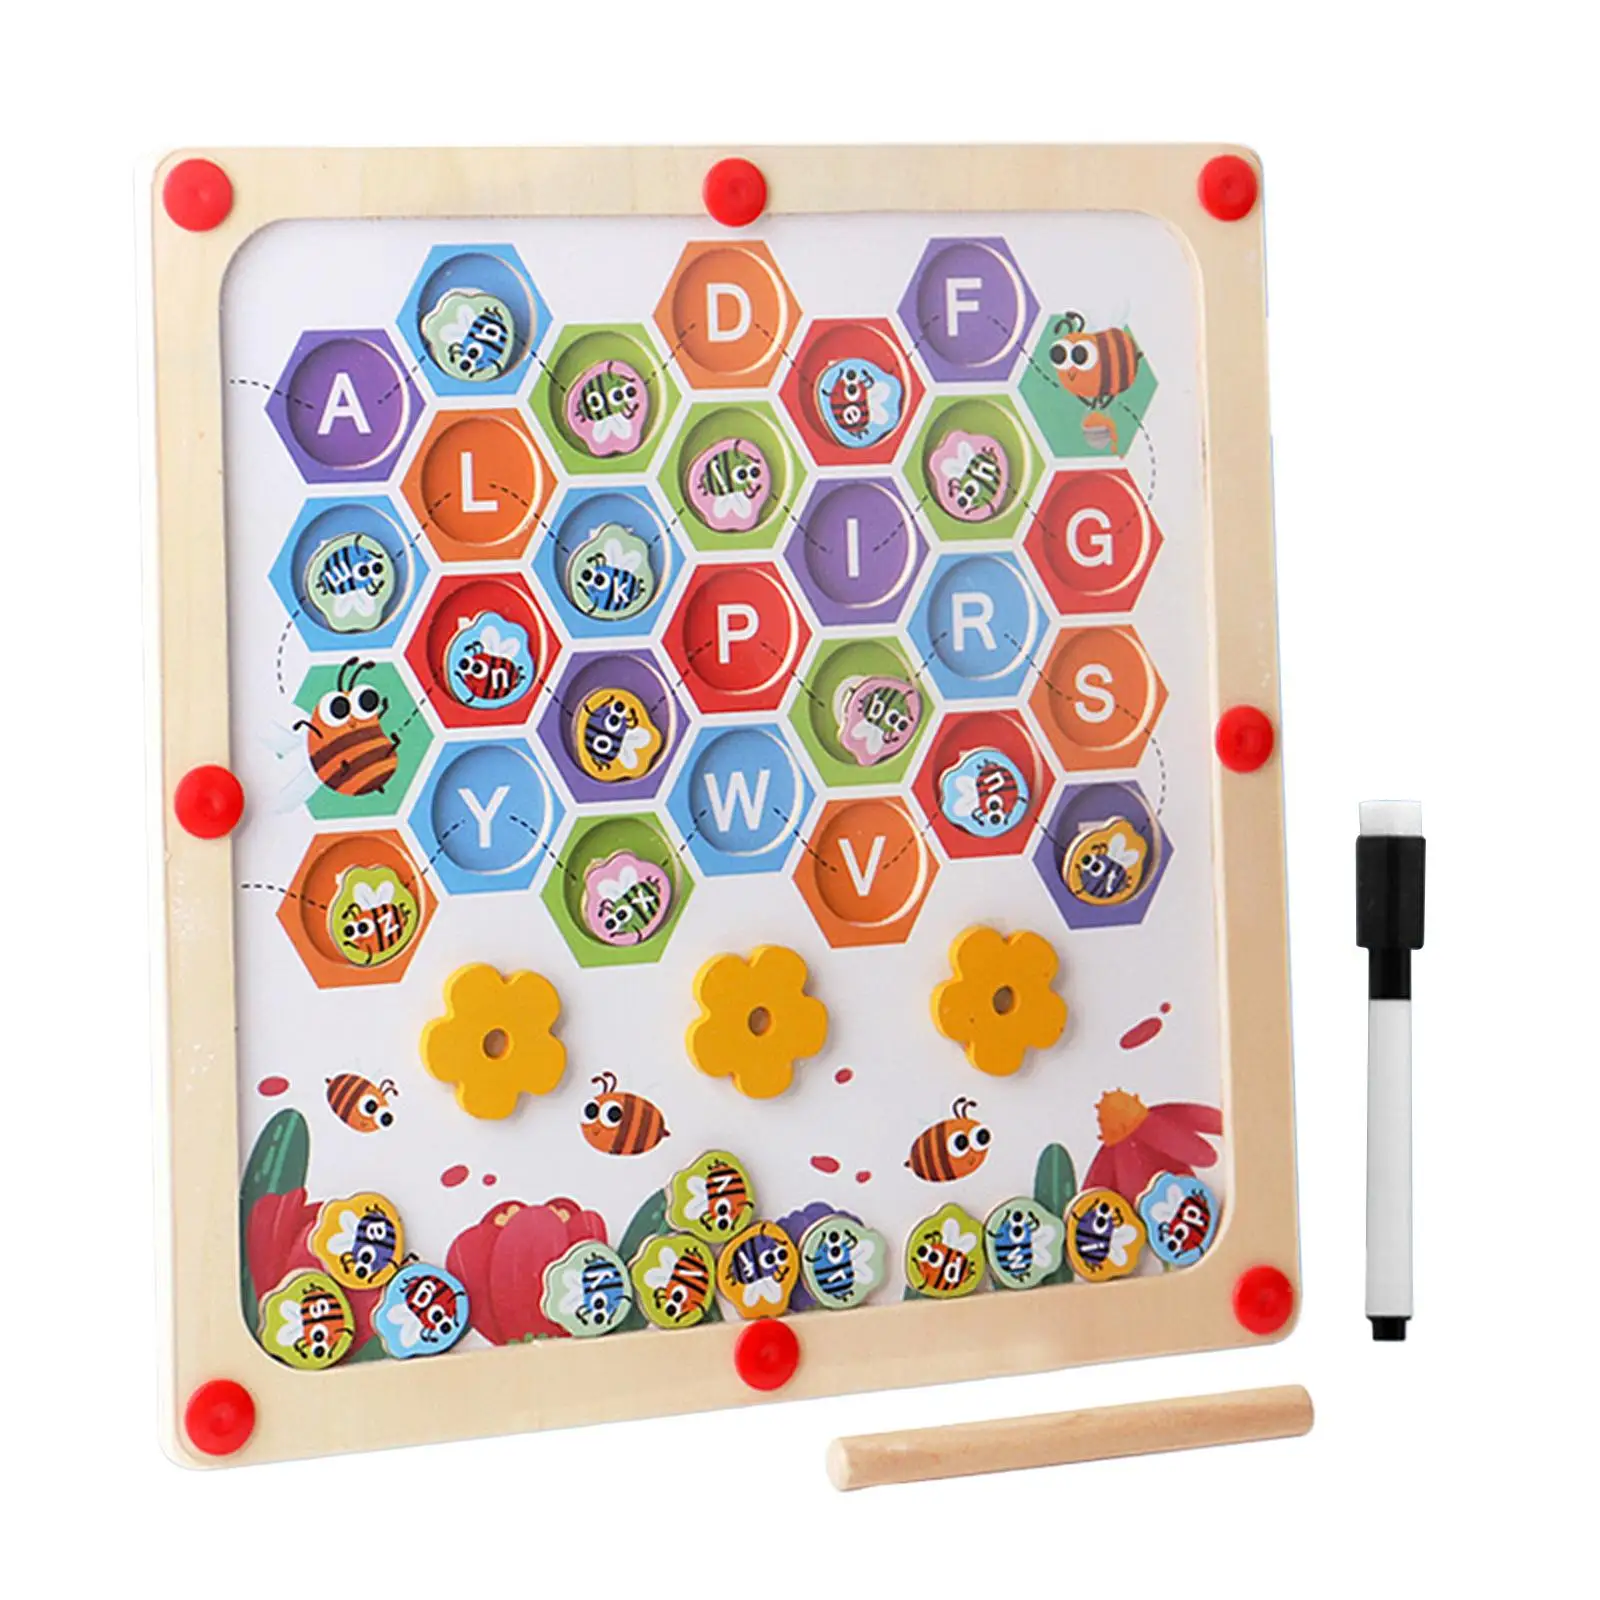 

Доска для рисования развивающая, игрушка для раннего обучения, игра с буквами познания, деревянная доска-головоломка для детей на день рождения